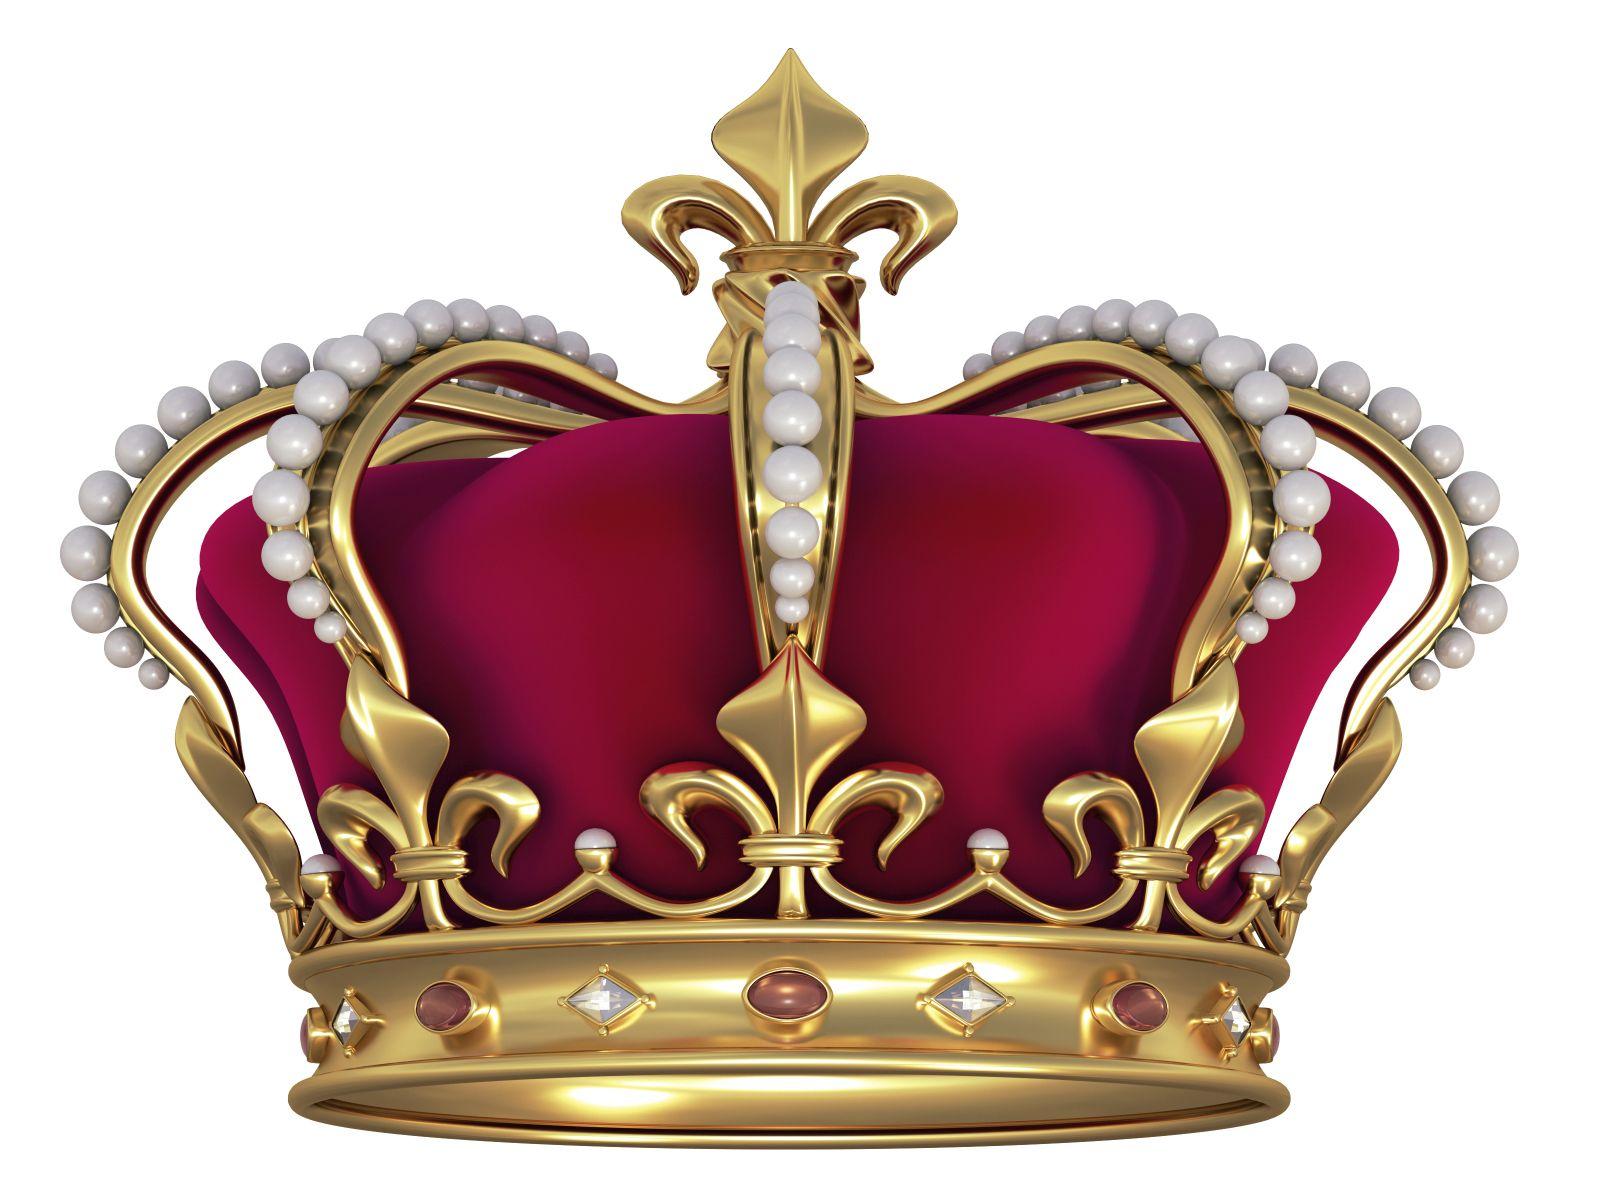 Gold King Crown Logo - Gold crown king free download